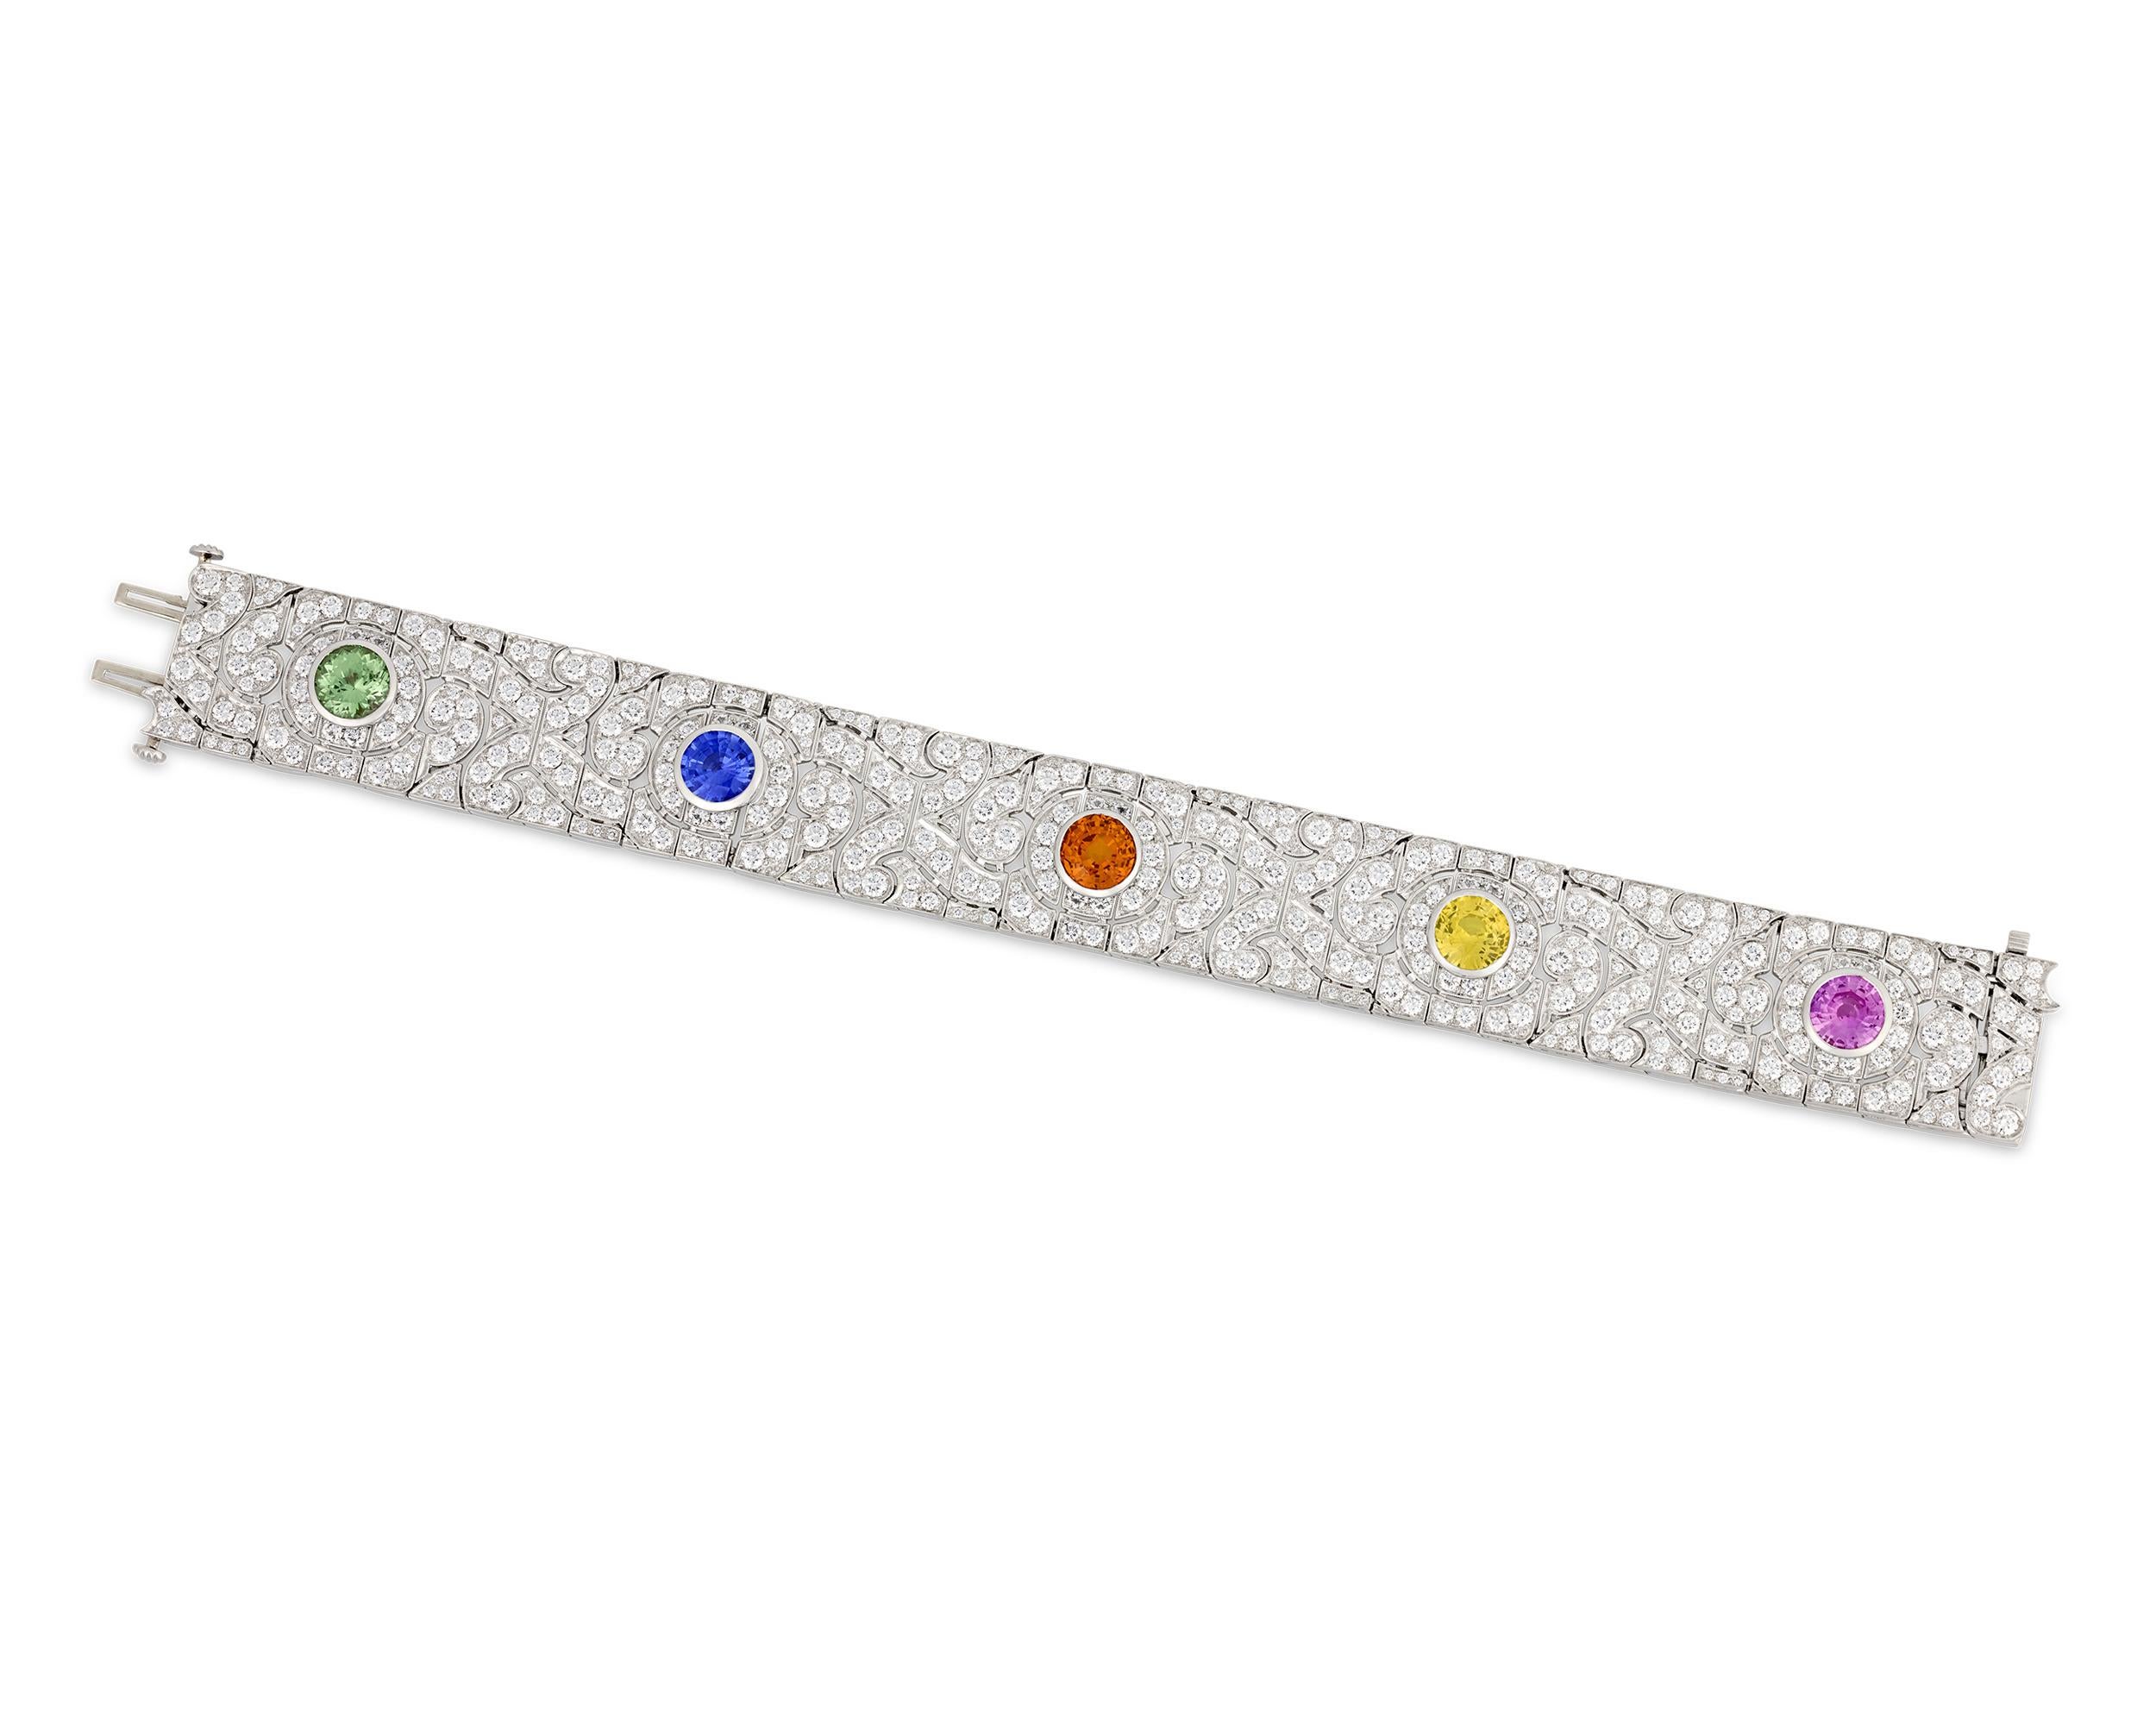 Ce bracelet exquis du célèbre créateur de bijoux Oscar Heyman est orné d'un arc-en-ciel de pierres précieuses colorées serties dans une mer de diamants blancs étincelants. Le modèle comprend un saphir orange de 2,71 carats, un saphir rose de 1,72